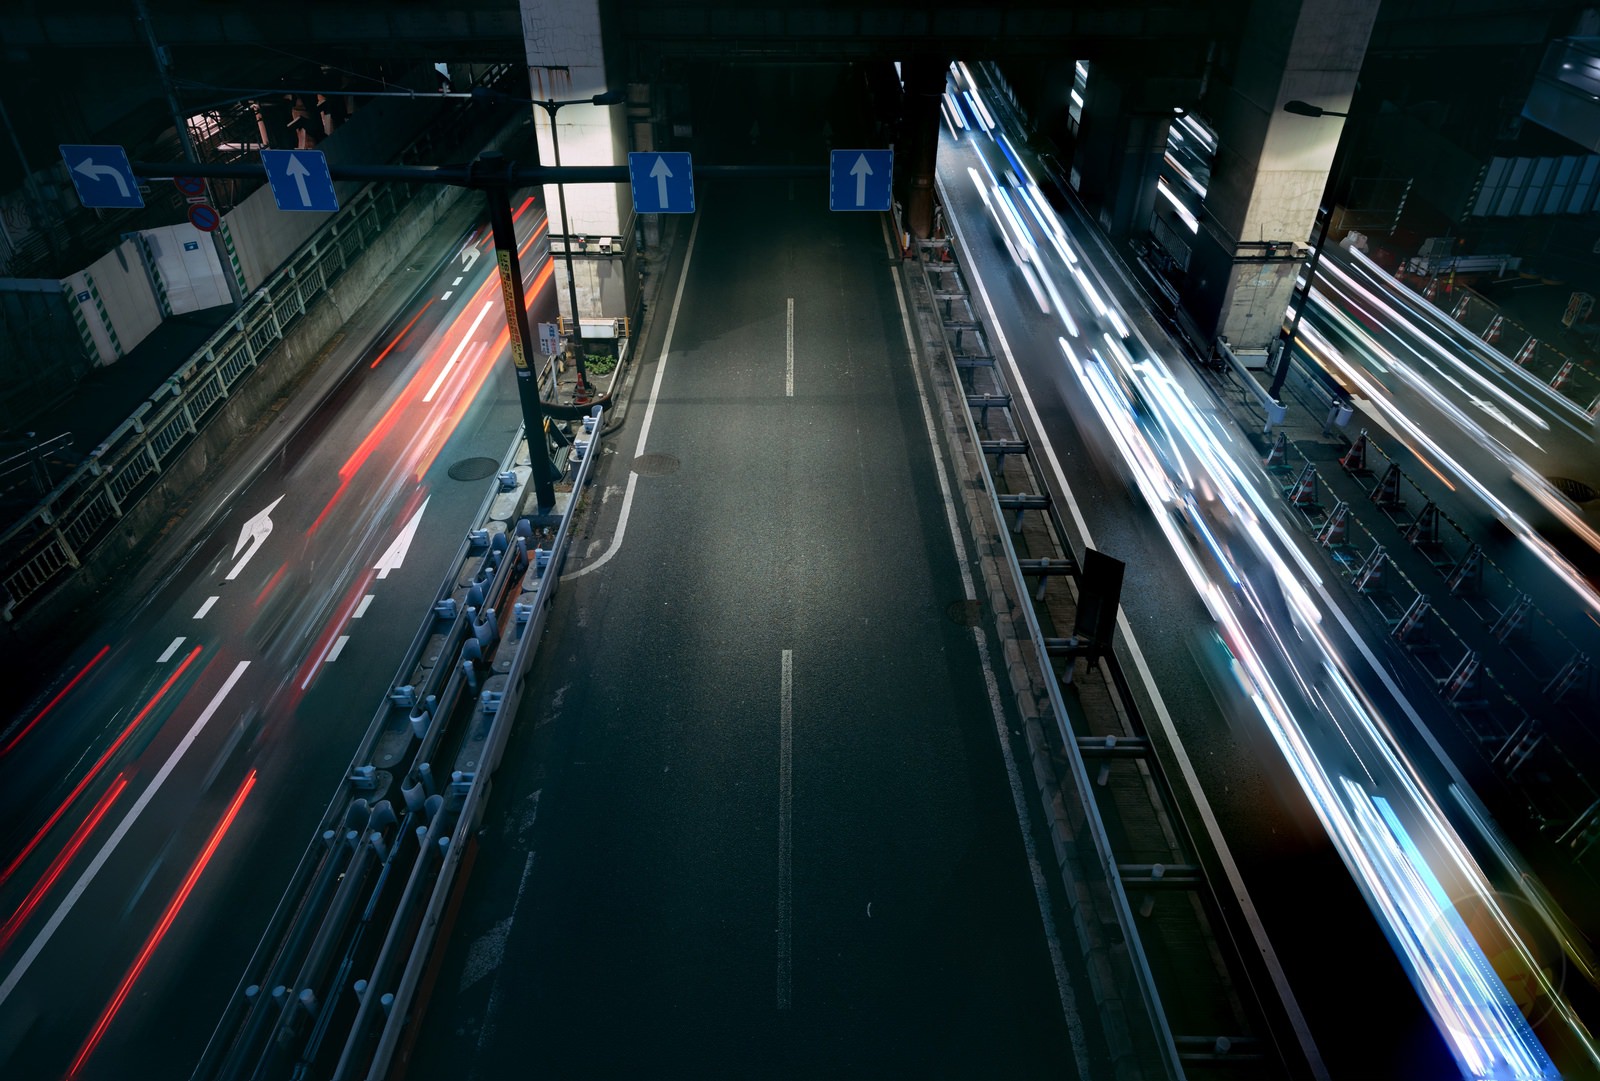 Shibuya Dusk and Night Street Photography with canonr6markII 37